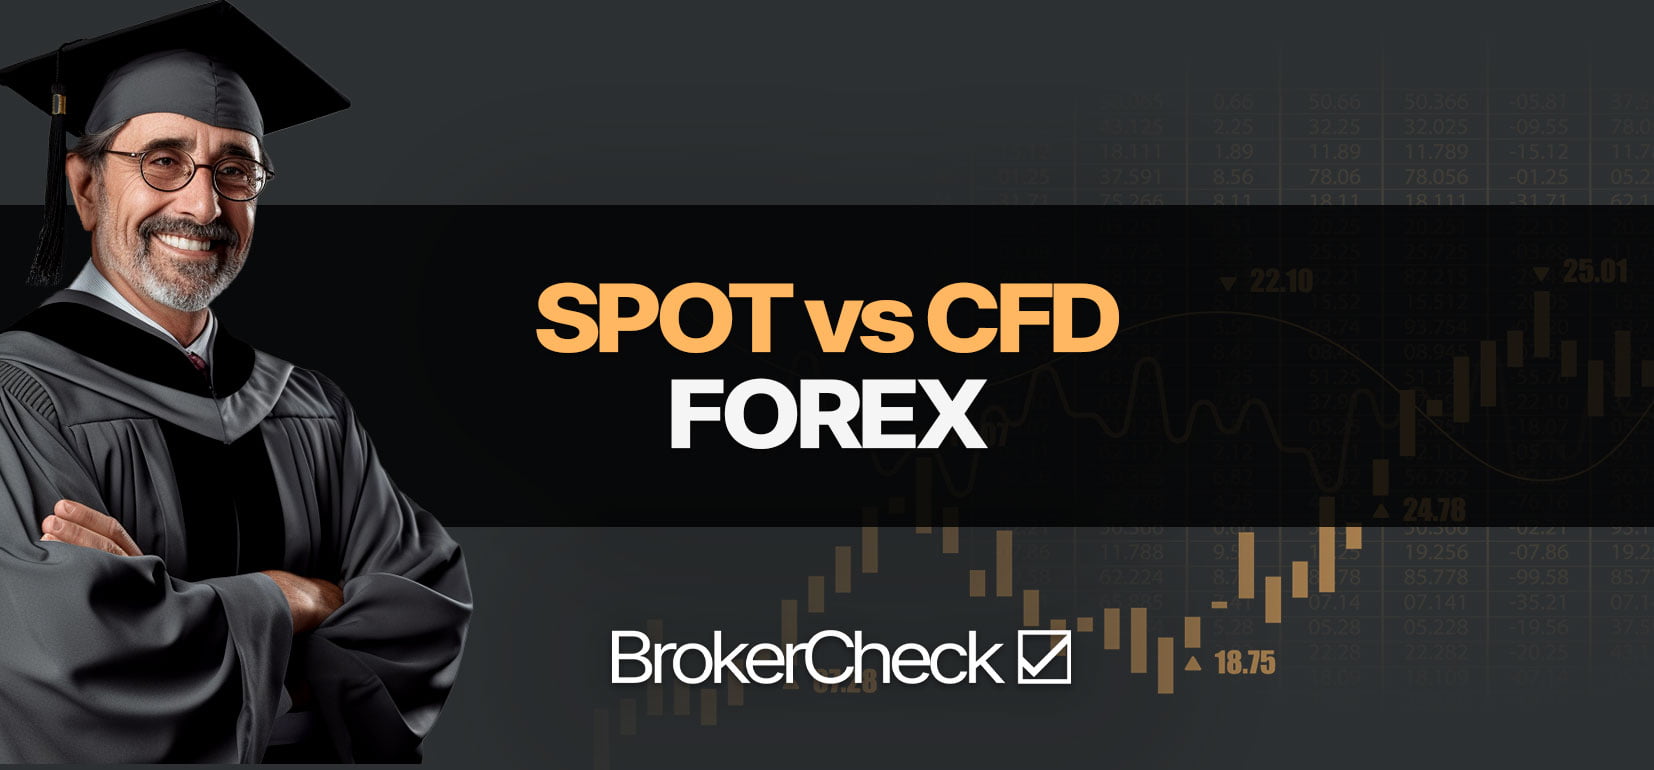 Spot Forex vs CFD Forex: Hva er bedre?